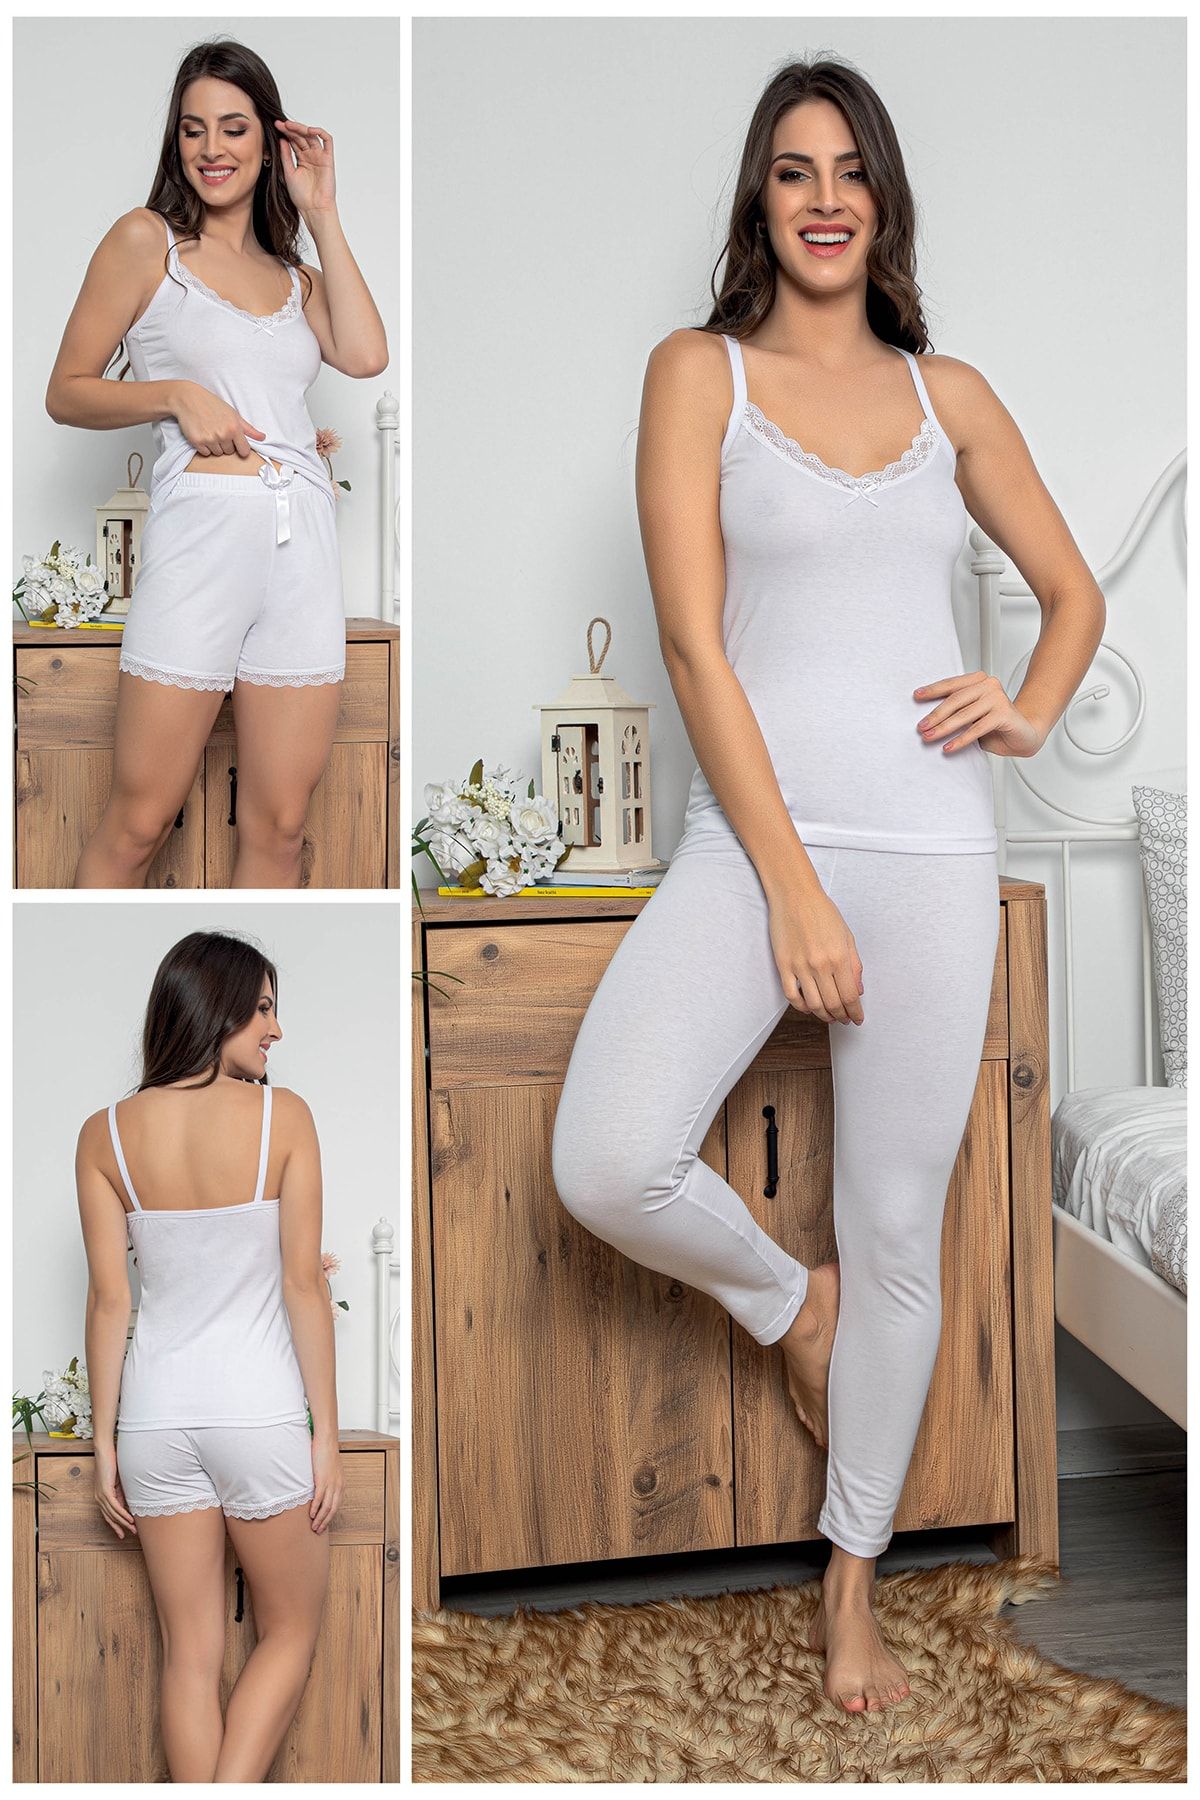 MyBen Kadın Beyaz Renkli Dantel Detaylı Şortlu Ve Taytlı Pijama Takımı 3'lü Set 75020